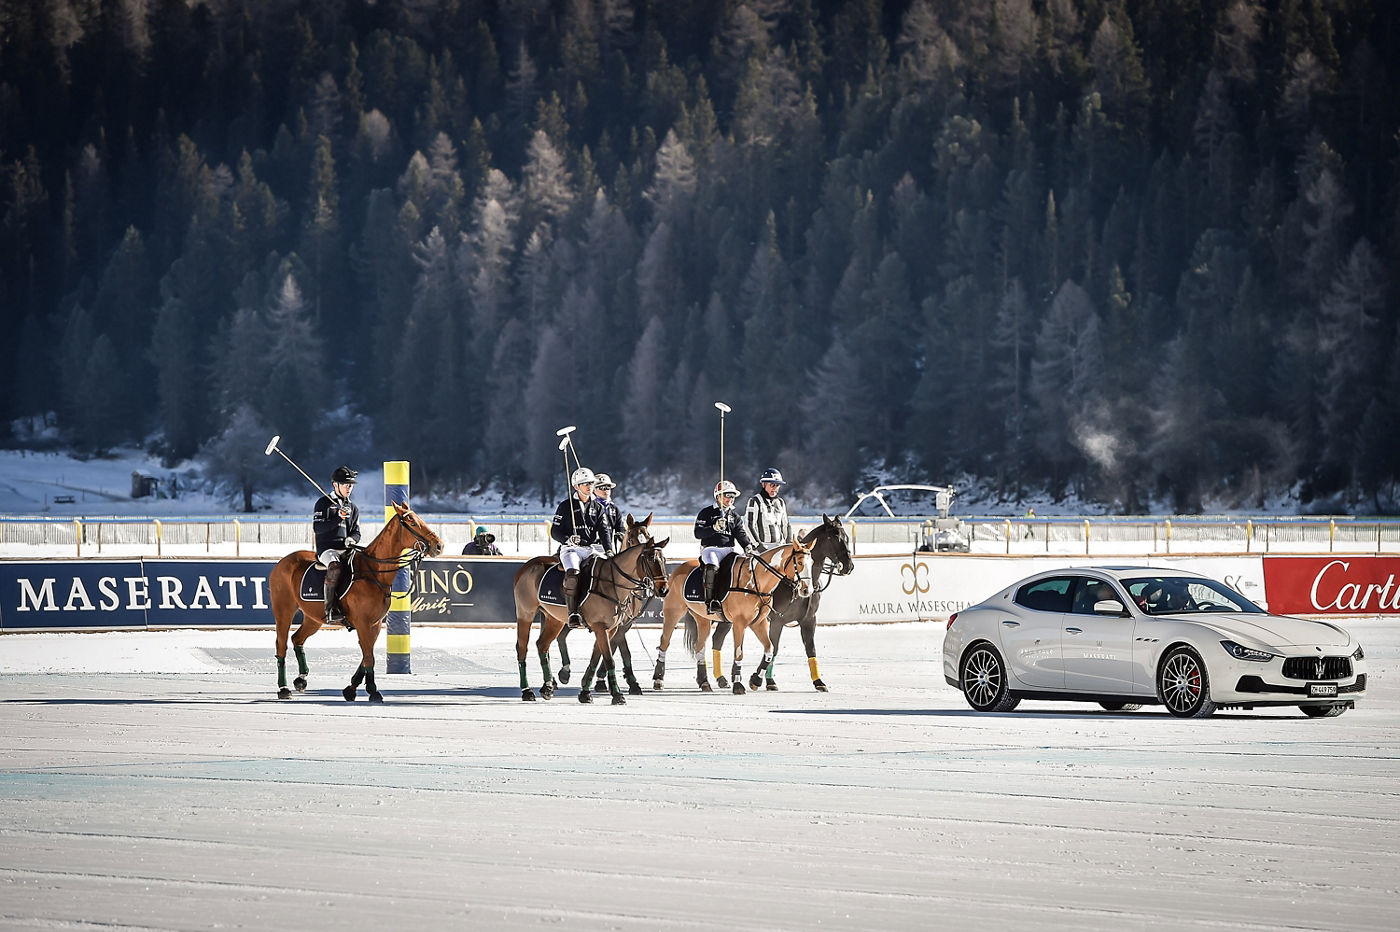 Maserati-Car-Parade-Snow-Polo-St-Moritz-Sunday-2